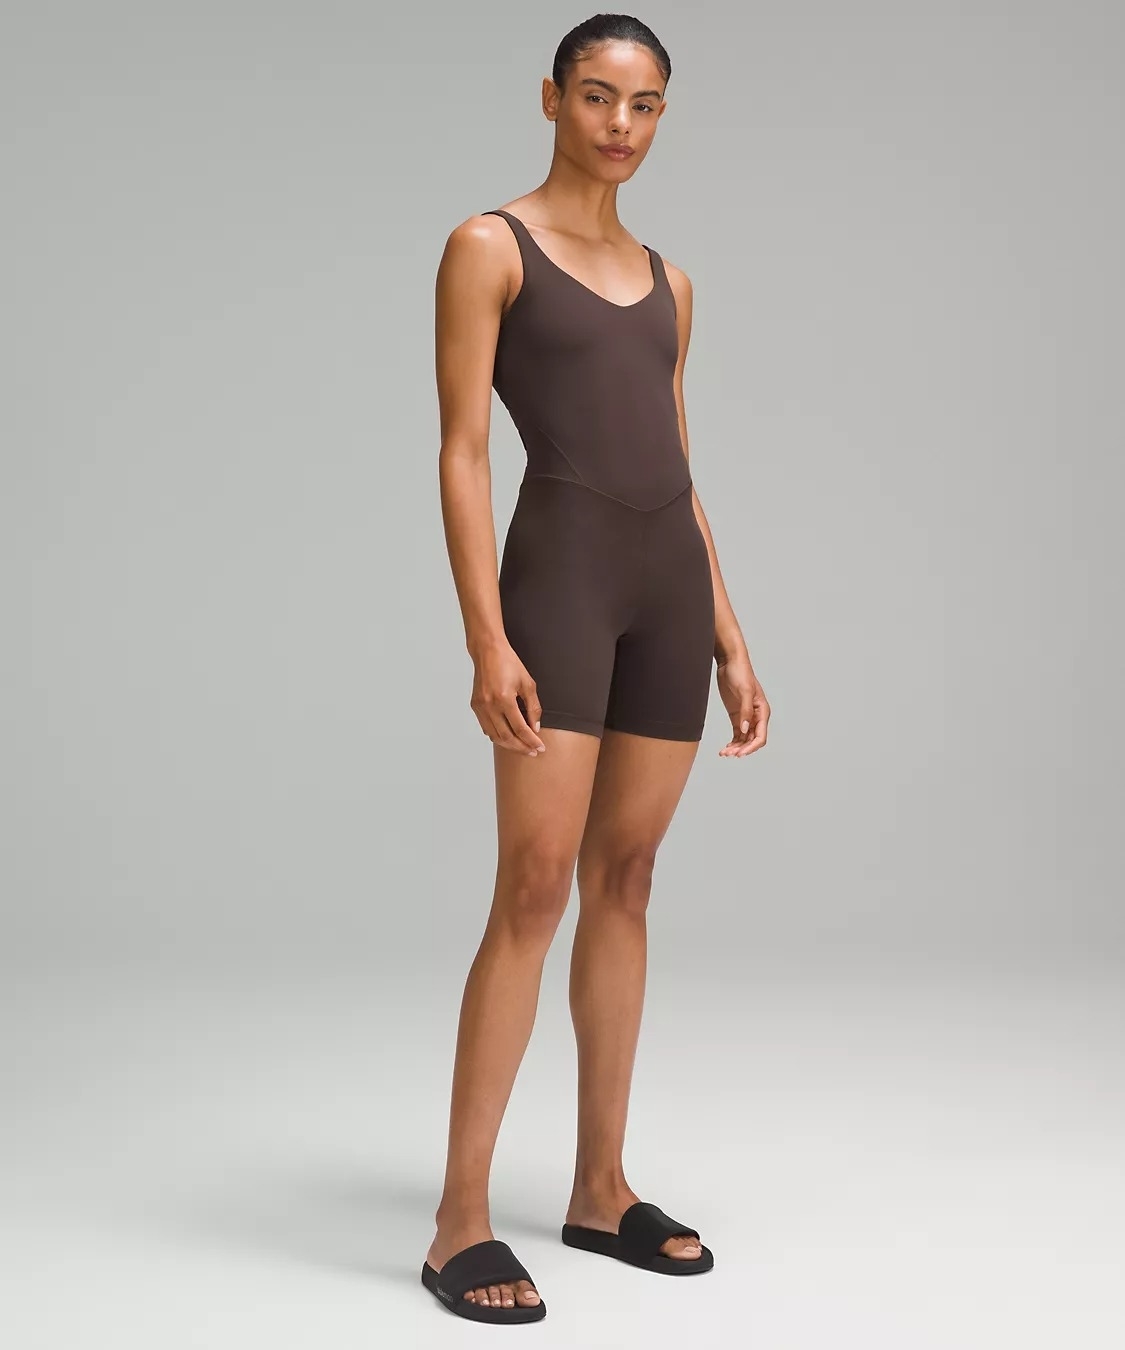 Model wearing brown sleeveless short bodysuit